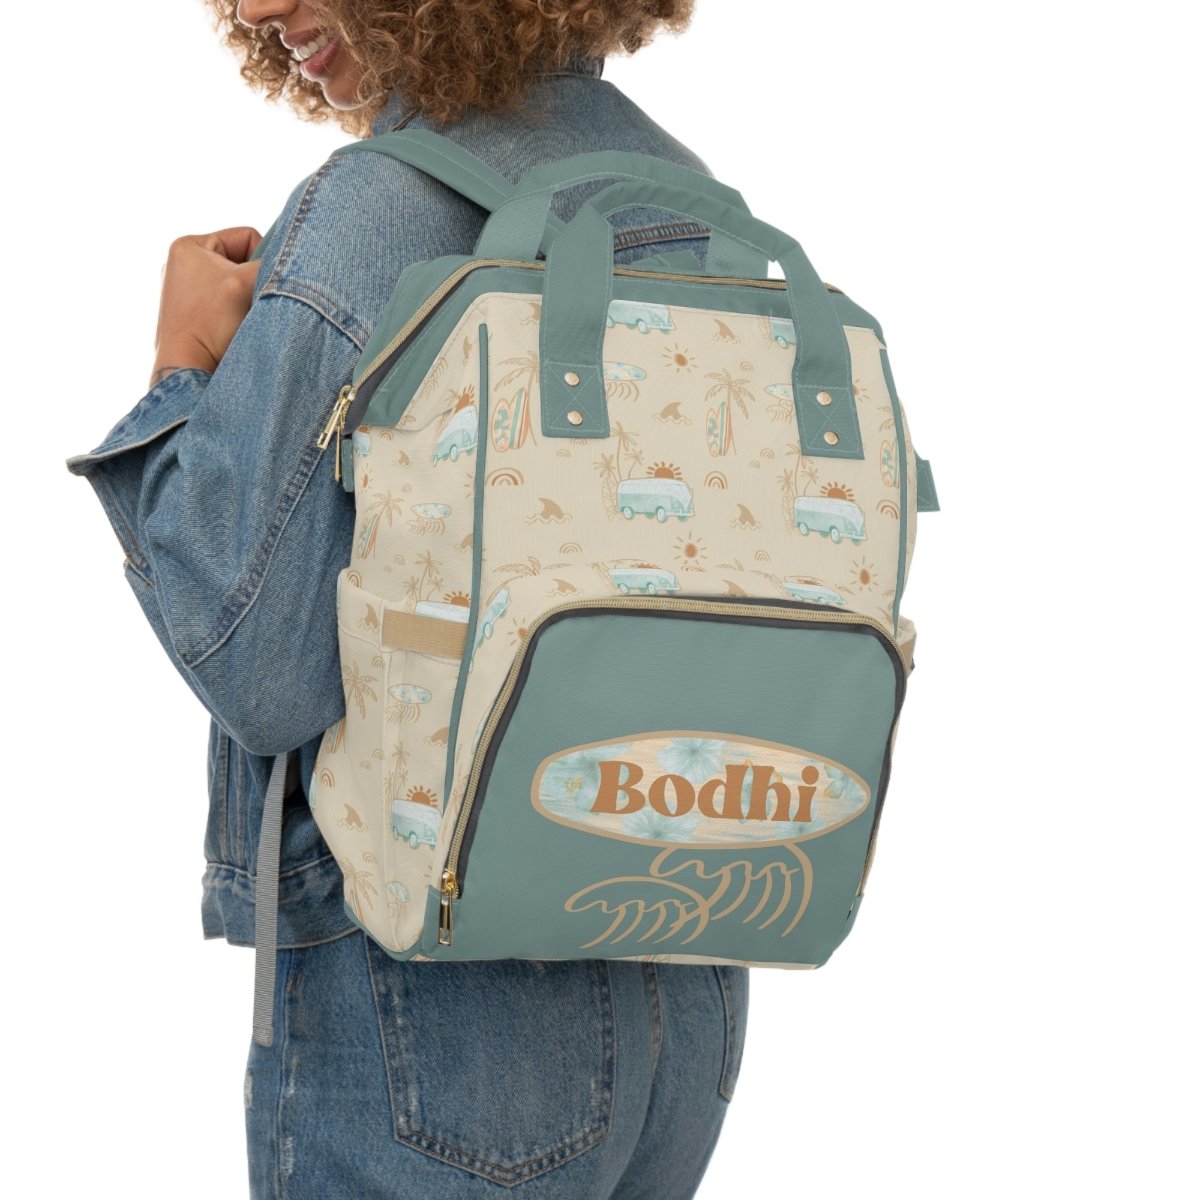 Boho Surfer Personalized Backpack Diaper Bag - Boho Surfer, gender_boy, gender_neutral